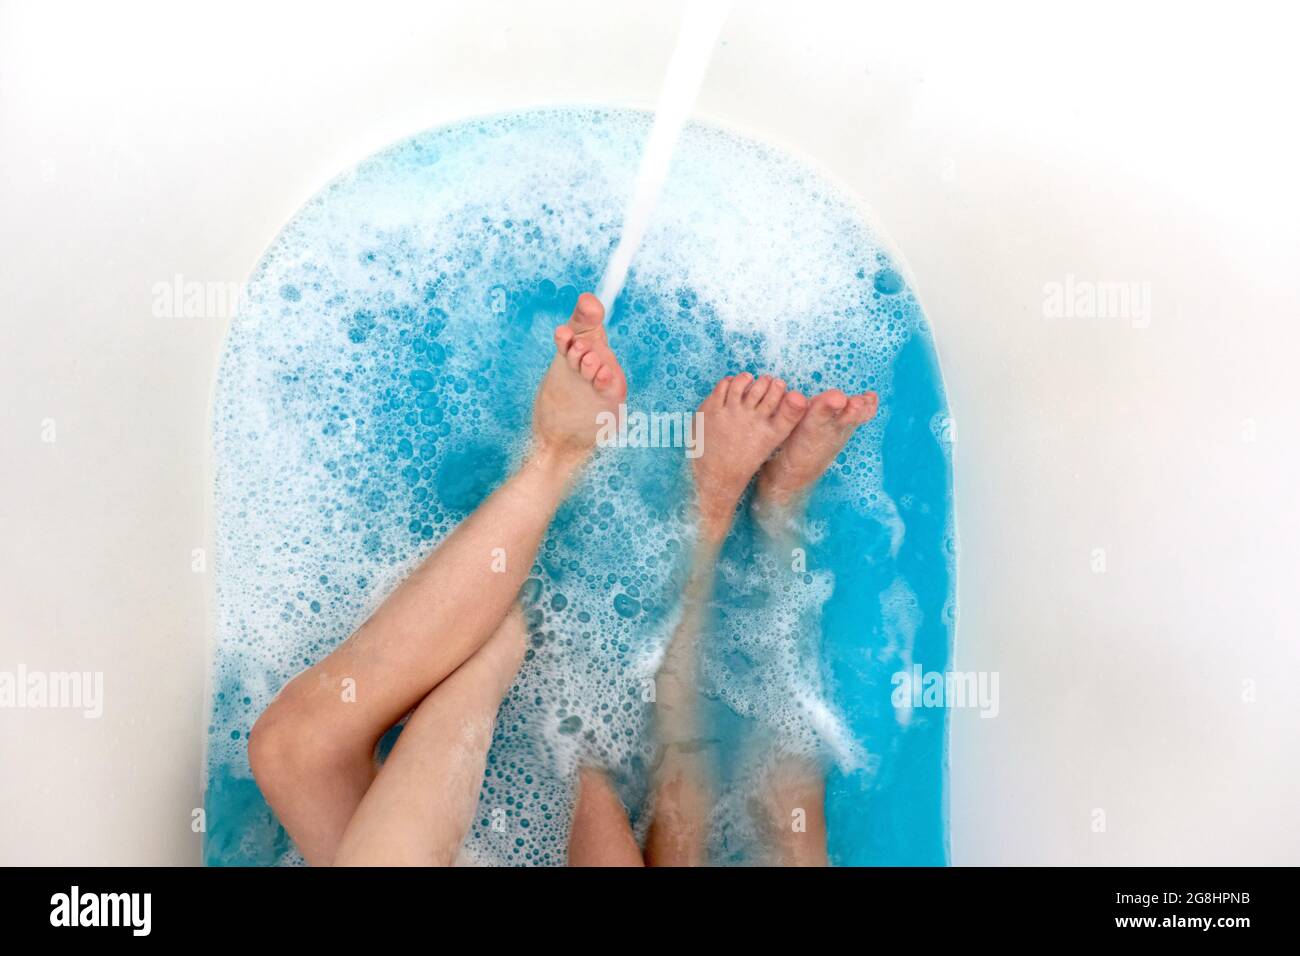 Cierre las piernas de los niños en la bañera con agua azul limpia, tubo de baño con las piernas humanas en el agua Foto de stock